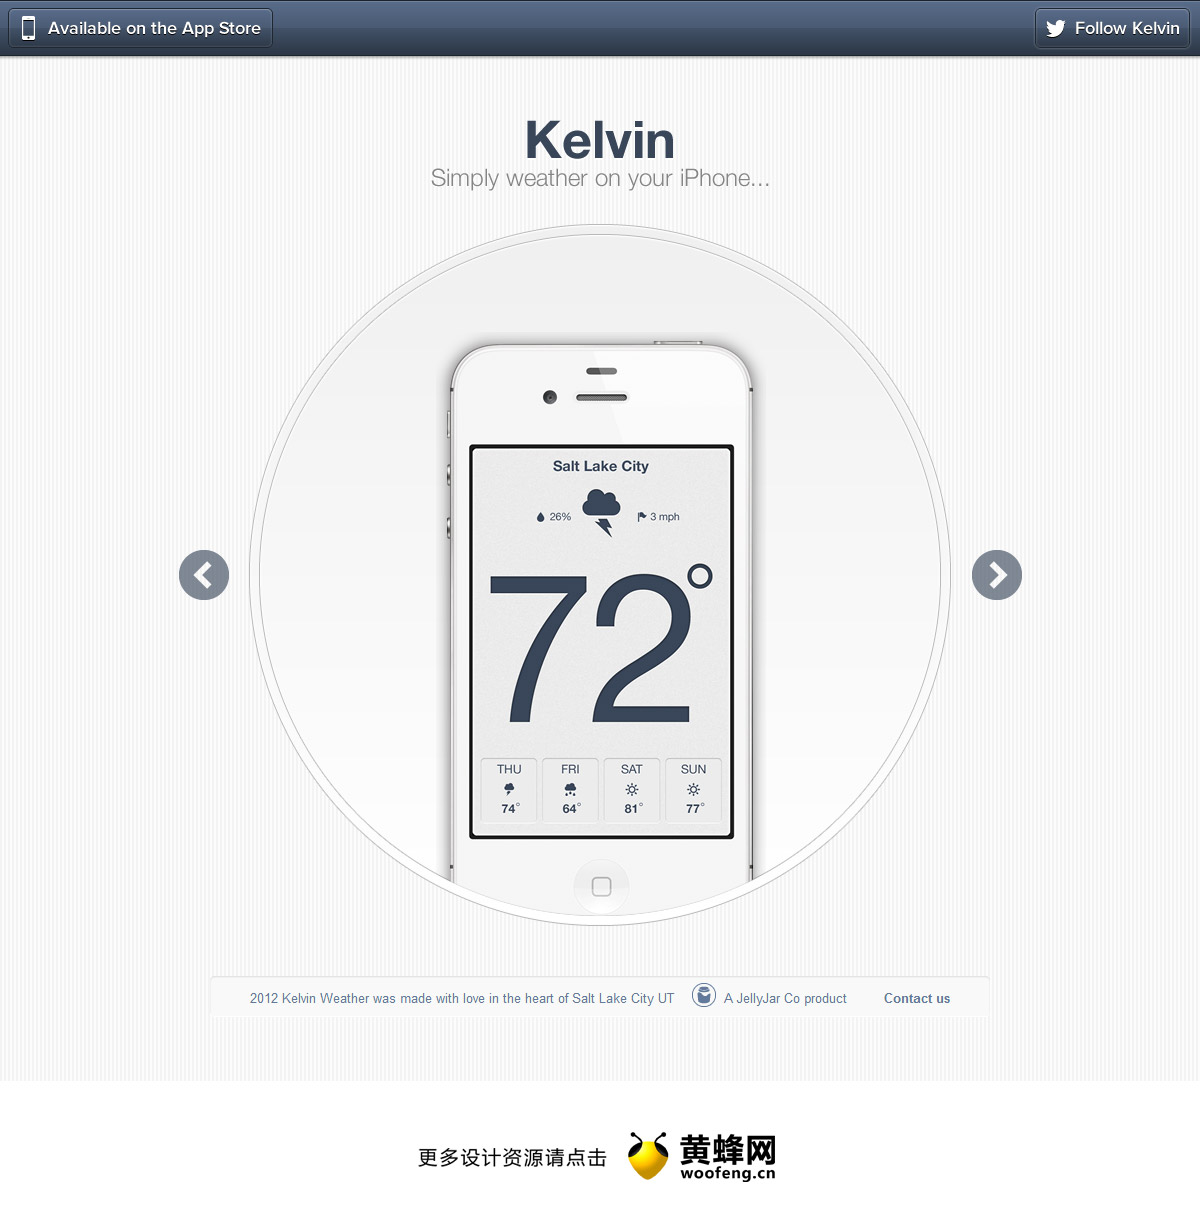 Kelvin天气应用程序，来源自黄蜂网https://woofeng.cn/web/